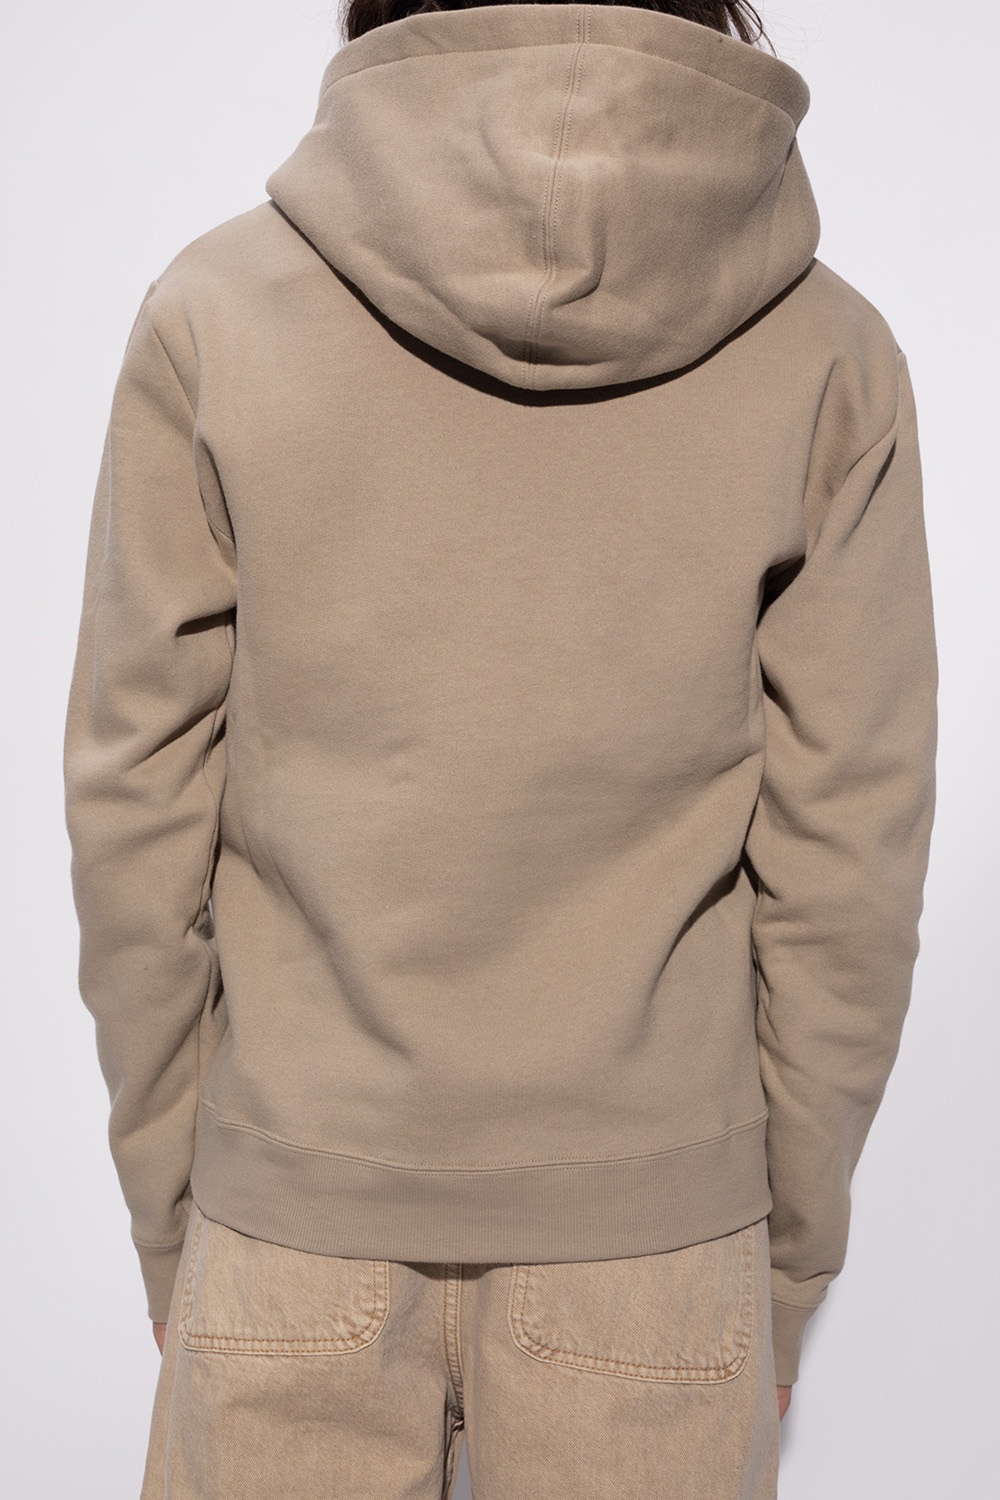 Saint Laurent Logo-printed hoodie | Men's Clothing | IetpShops